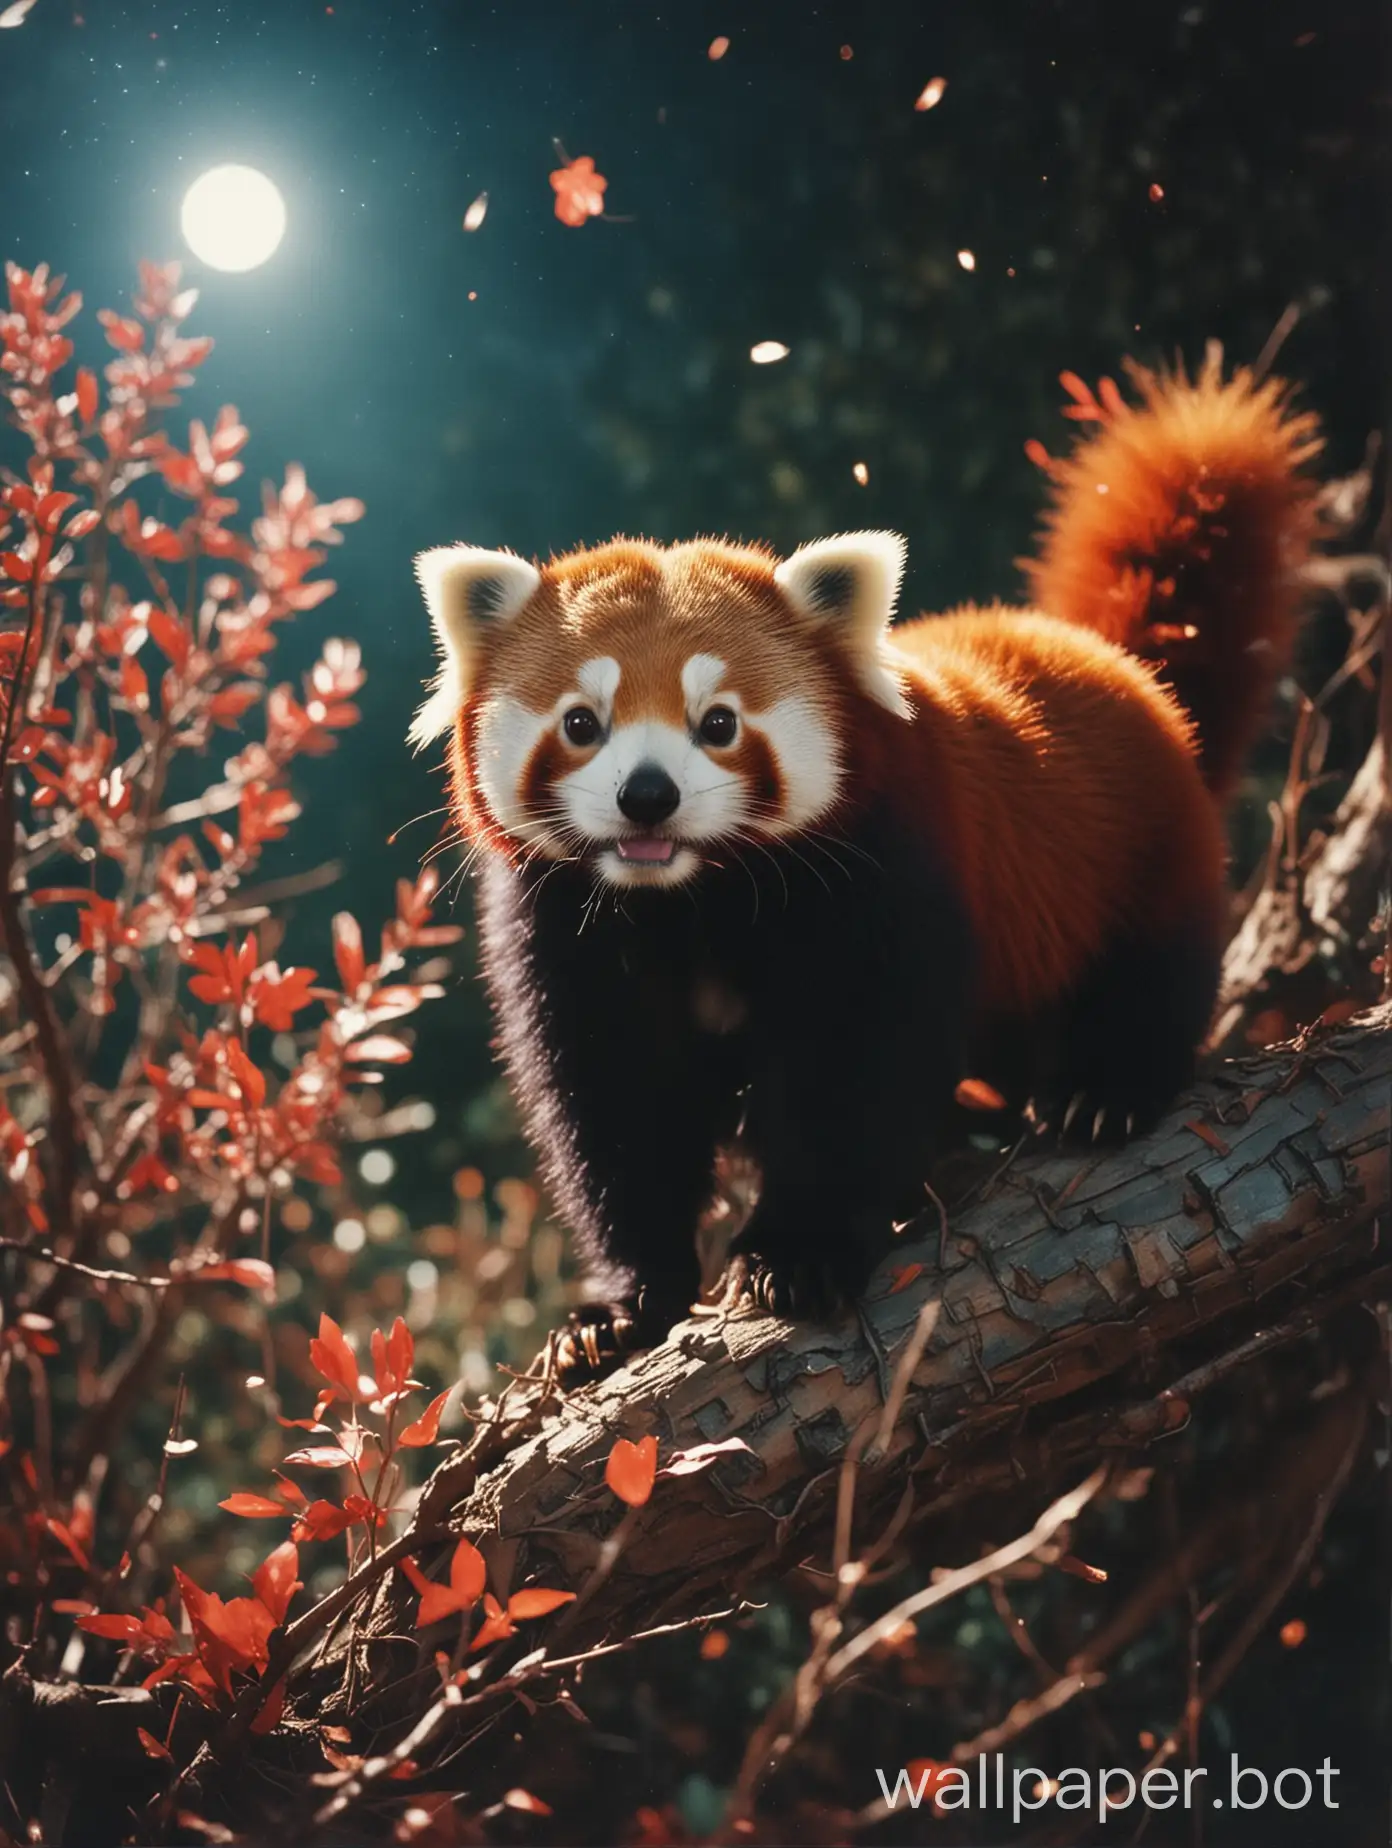 Celestial-Red-Panda-in-Sparklecore-Light-Leaks-Aesthetic-Analog-Photograph